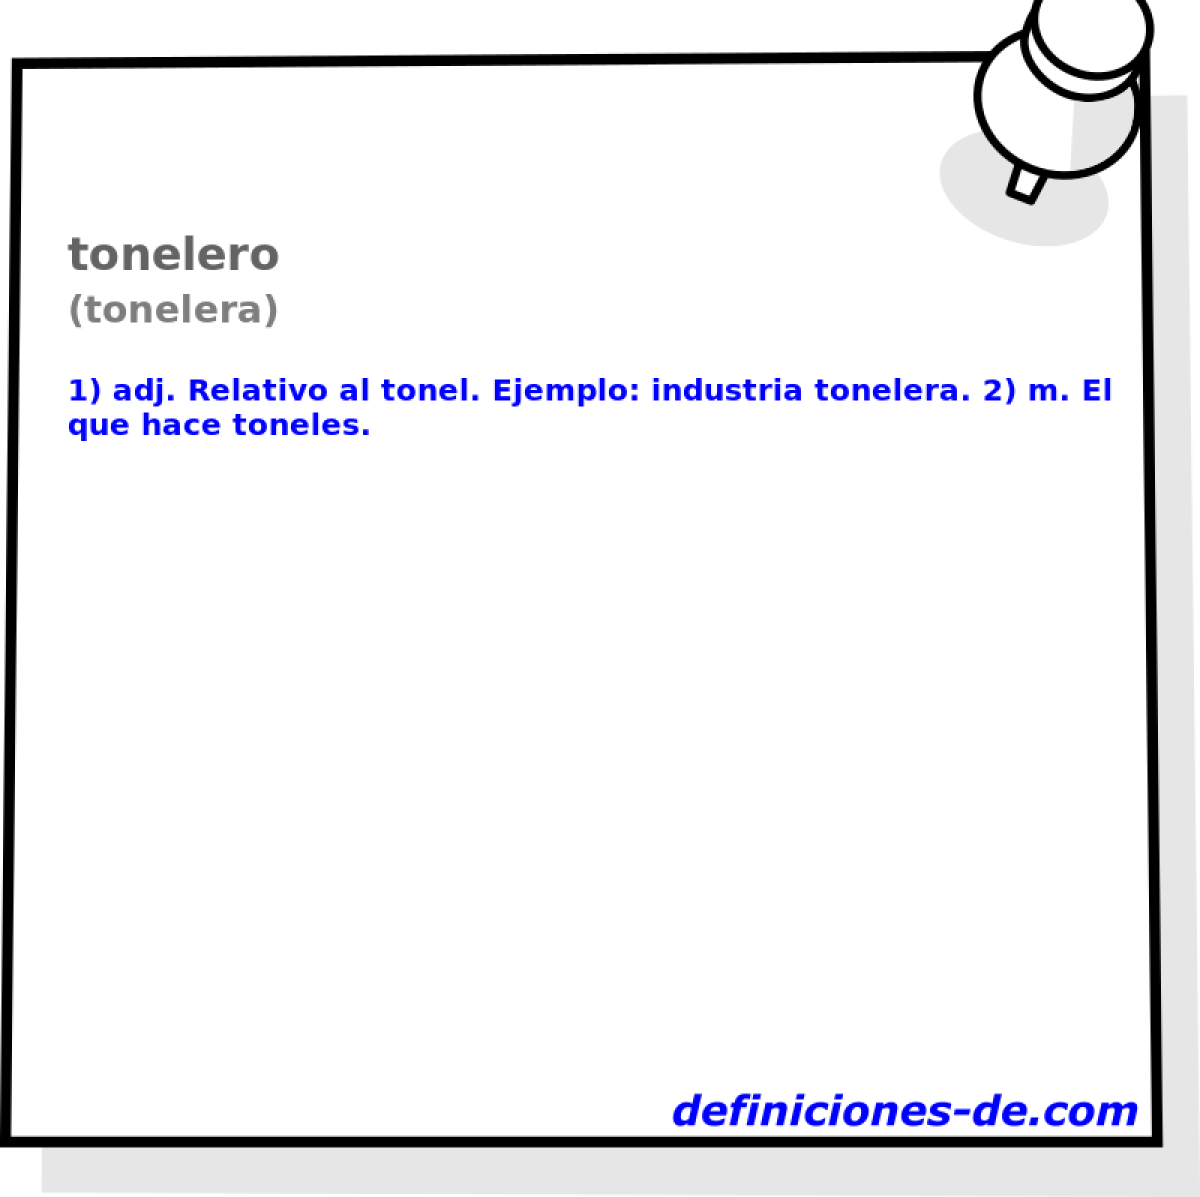 tonelero (tonelera)